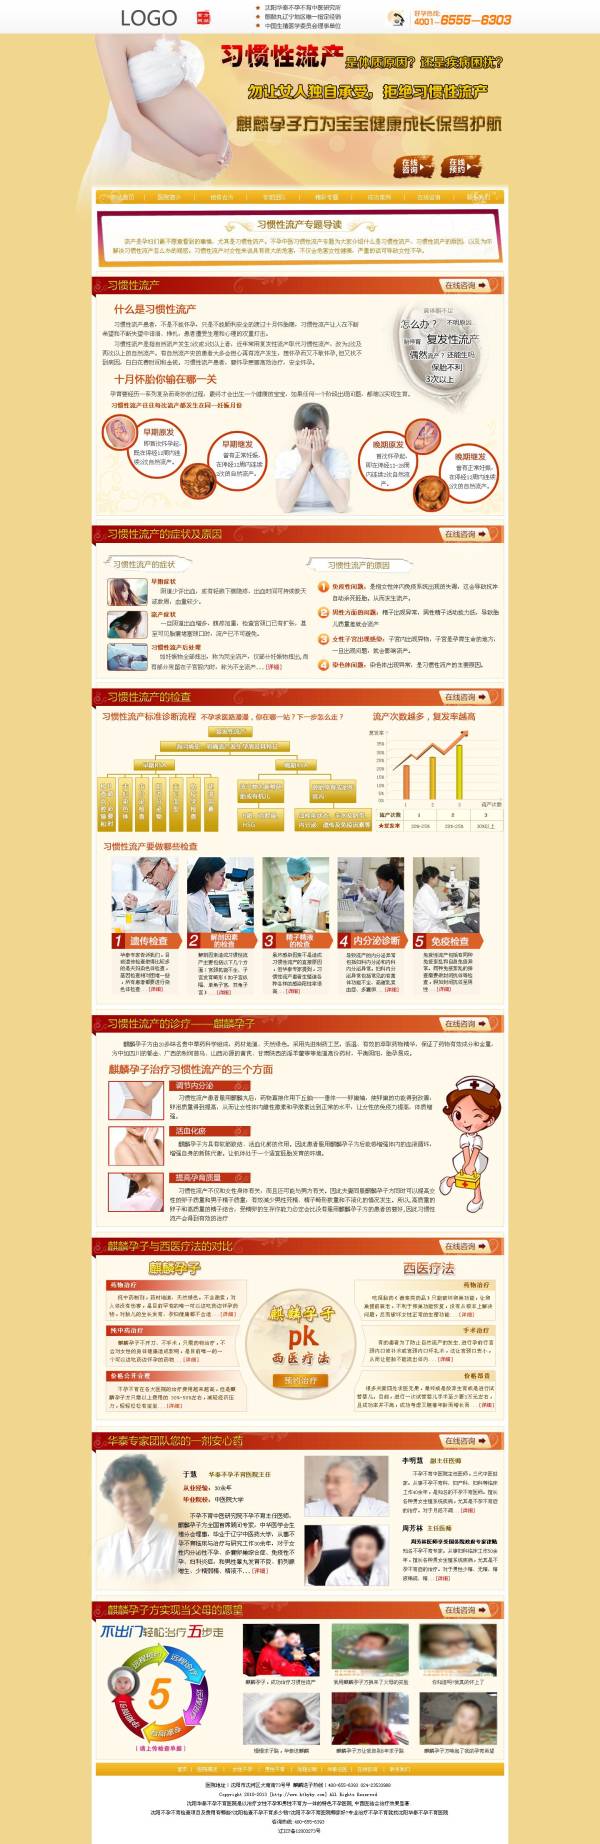 医院治疗习惯性流产广告专题页面模板psd分层素材下载